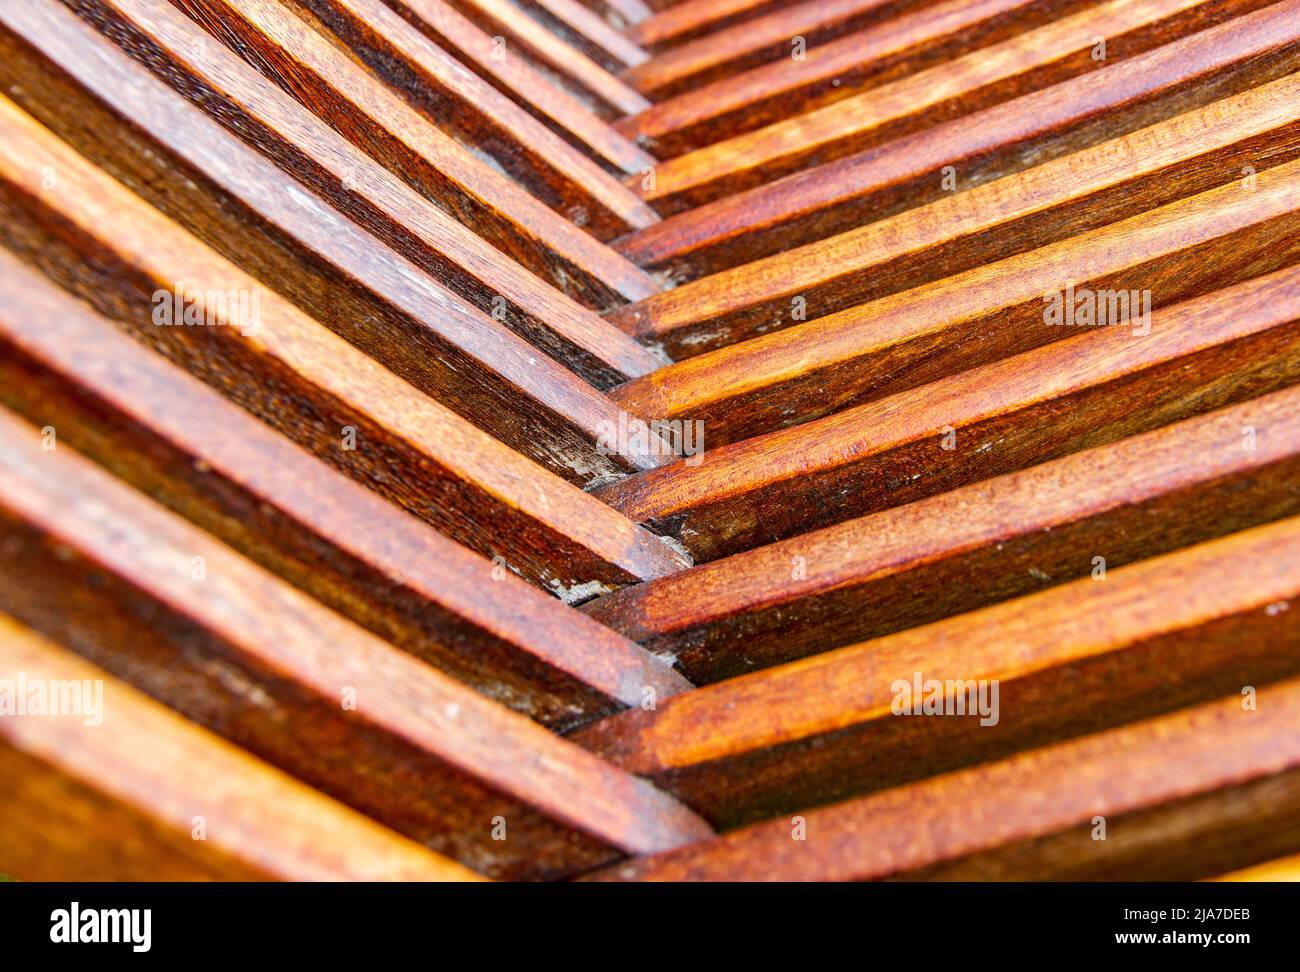 tung oil on hardwood garden chair Stock Photo